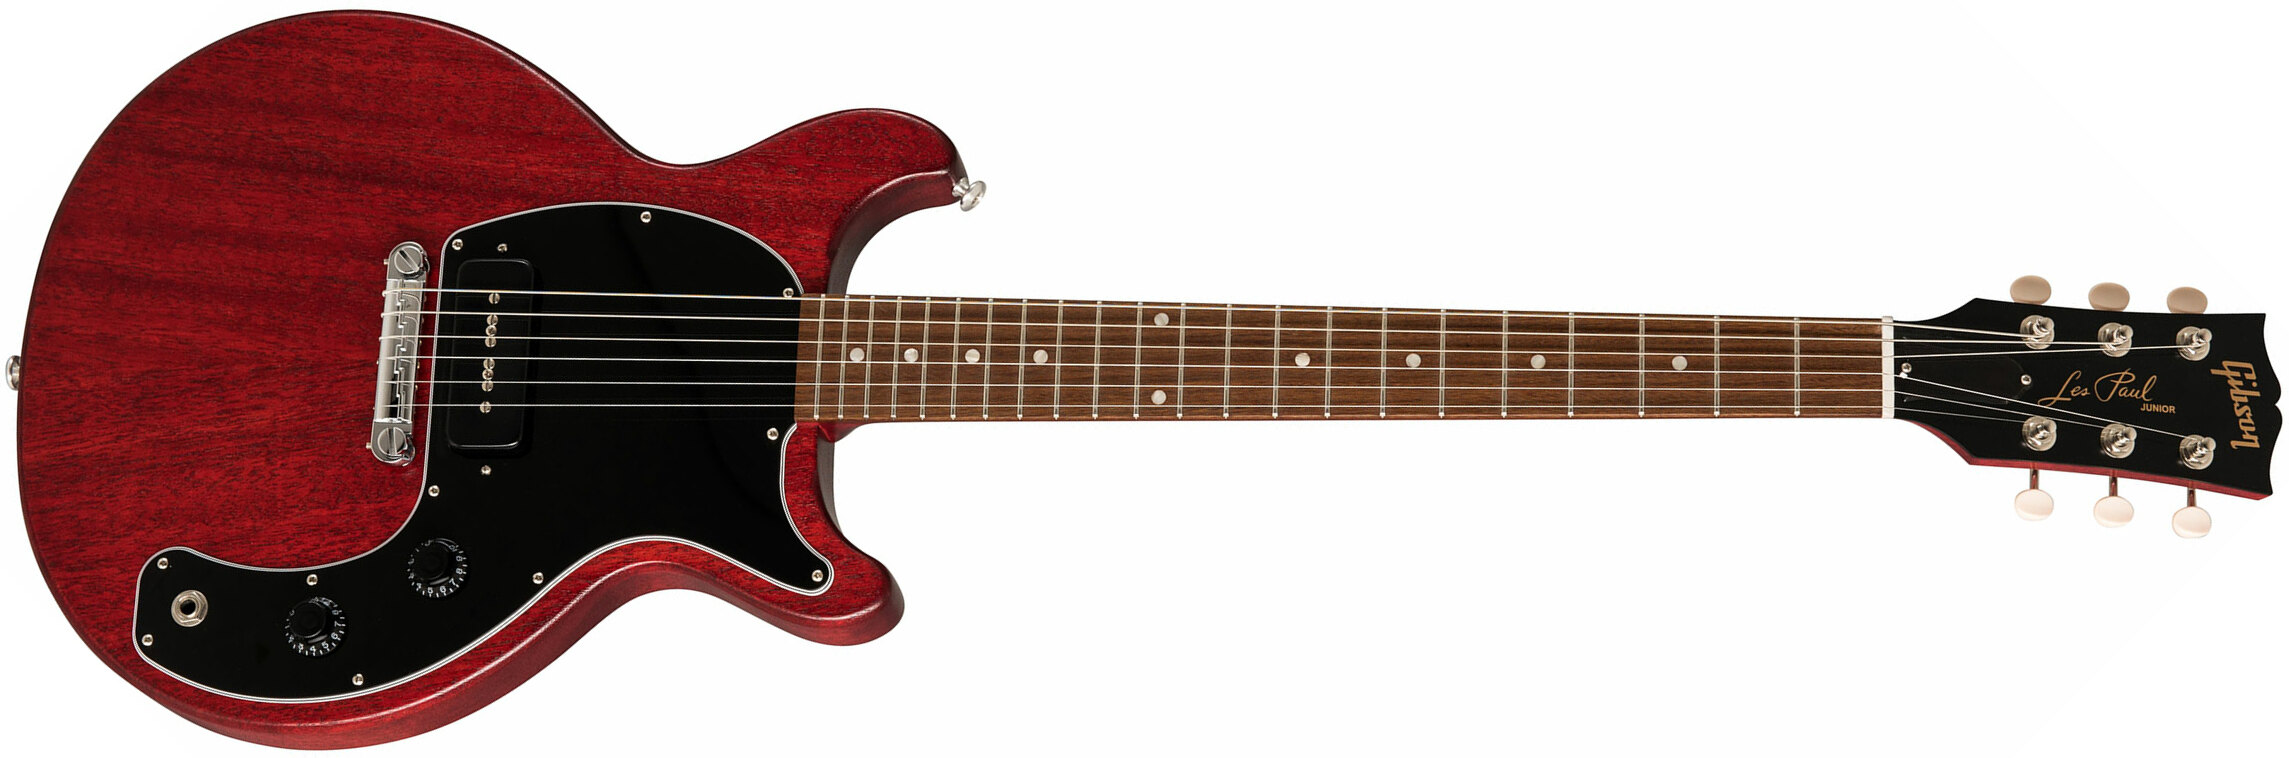 Gibson Les Paul Junior Tribute 2019 P90 Ht Rw - Worn Cherry - Guitarra eléctrica de corte único. - Main picture